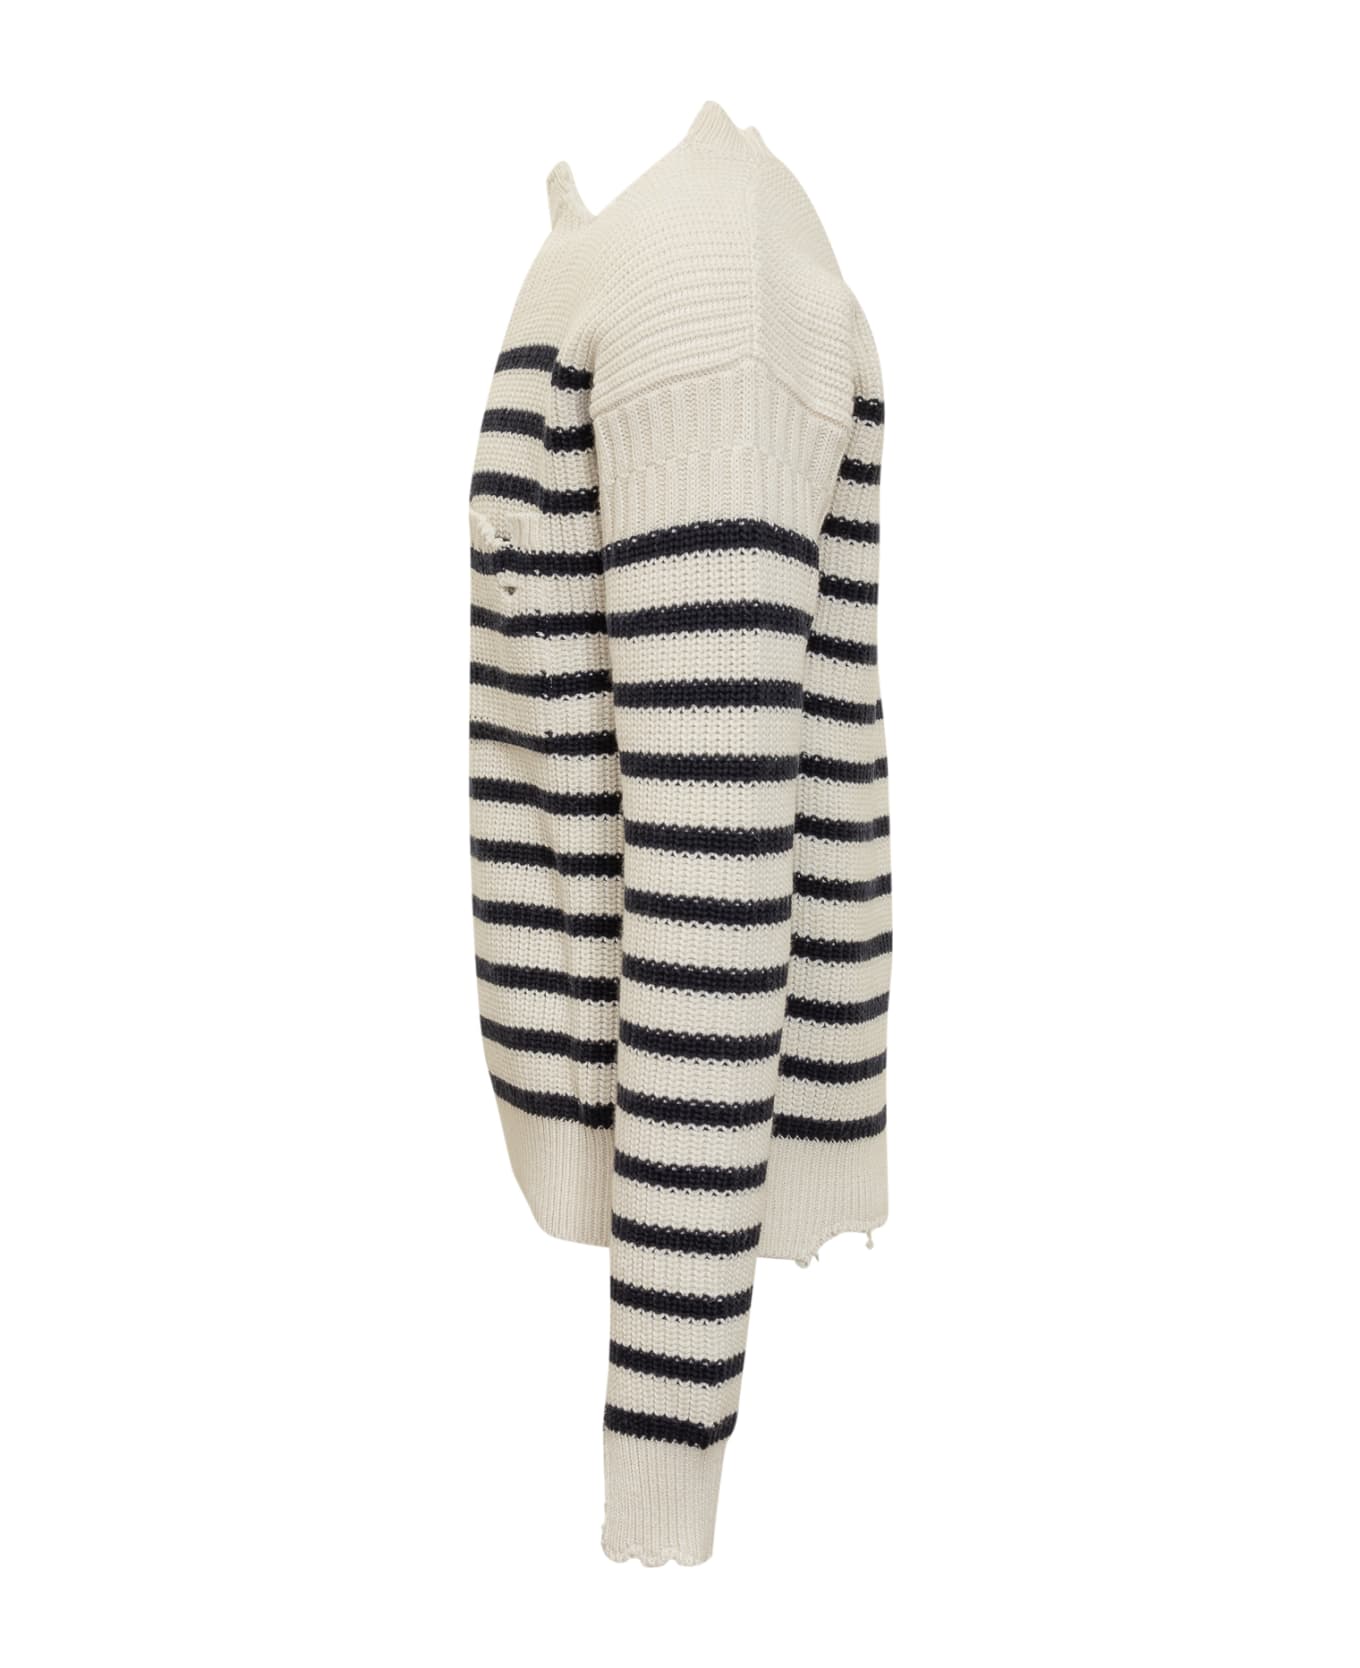 Marni Striped Sweater - STONE WHITE ニットウェア